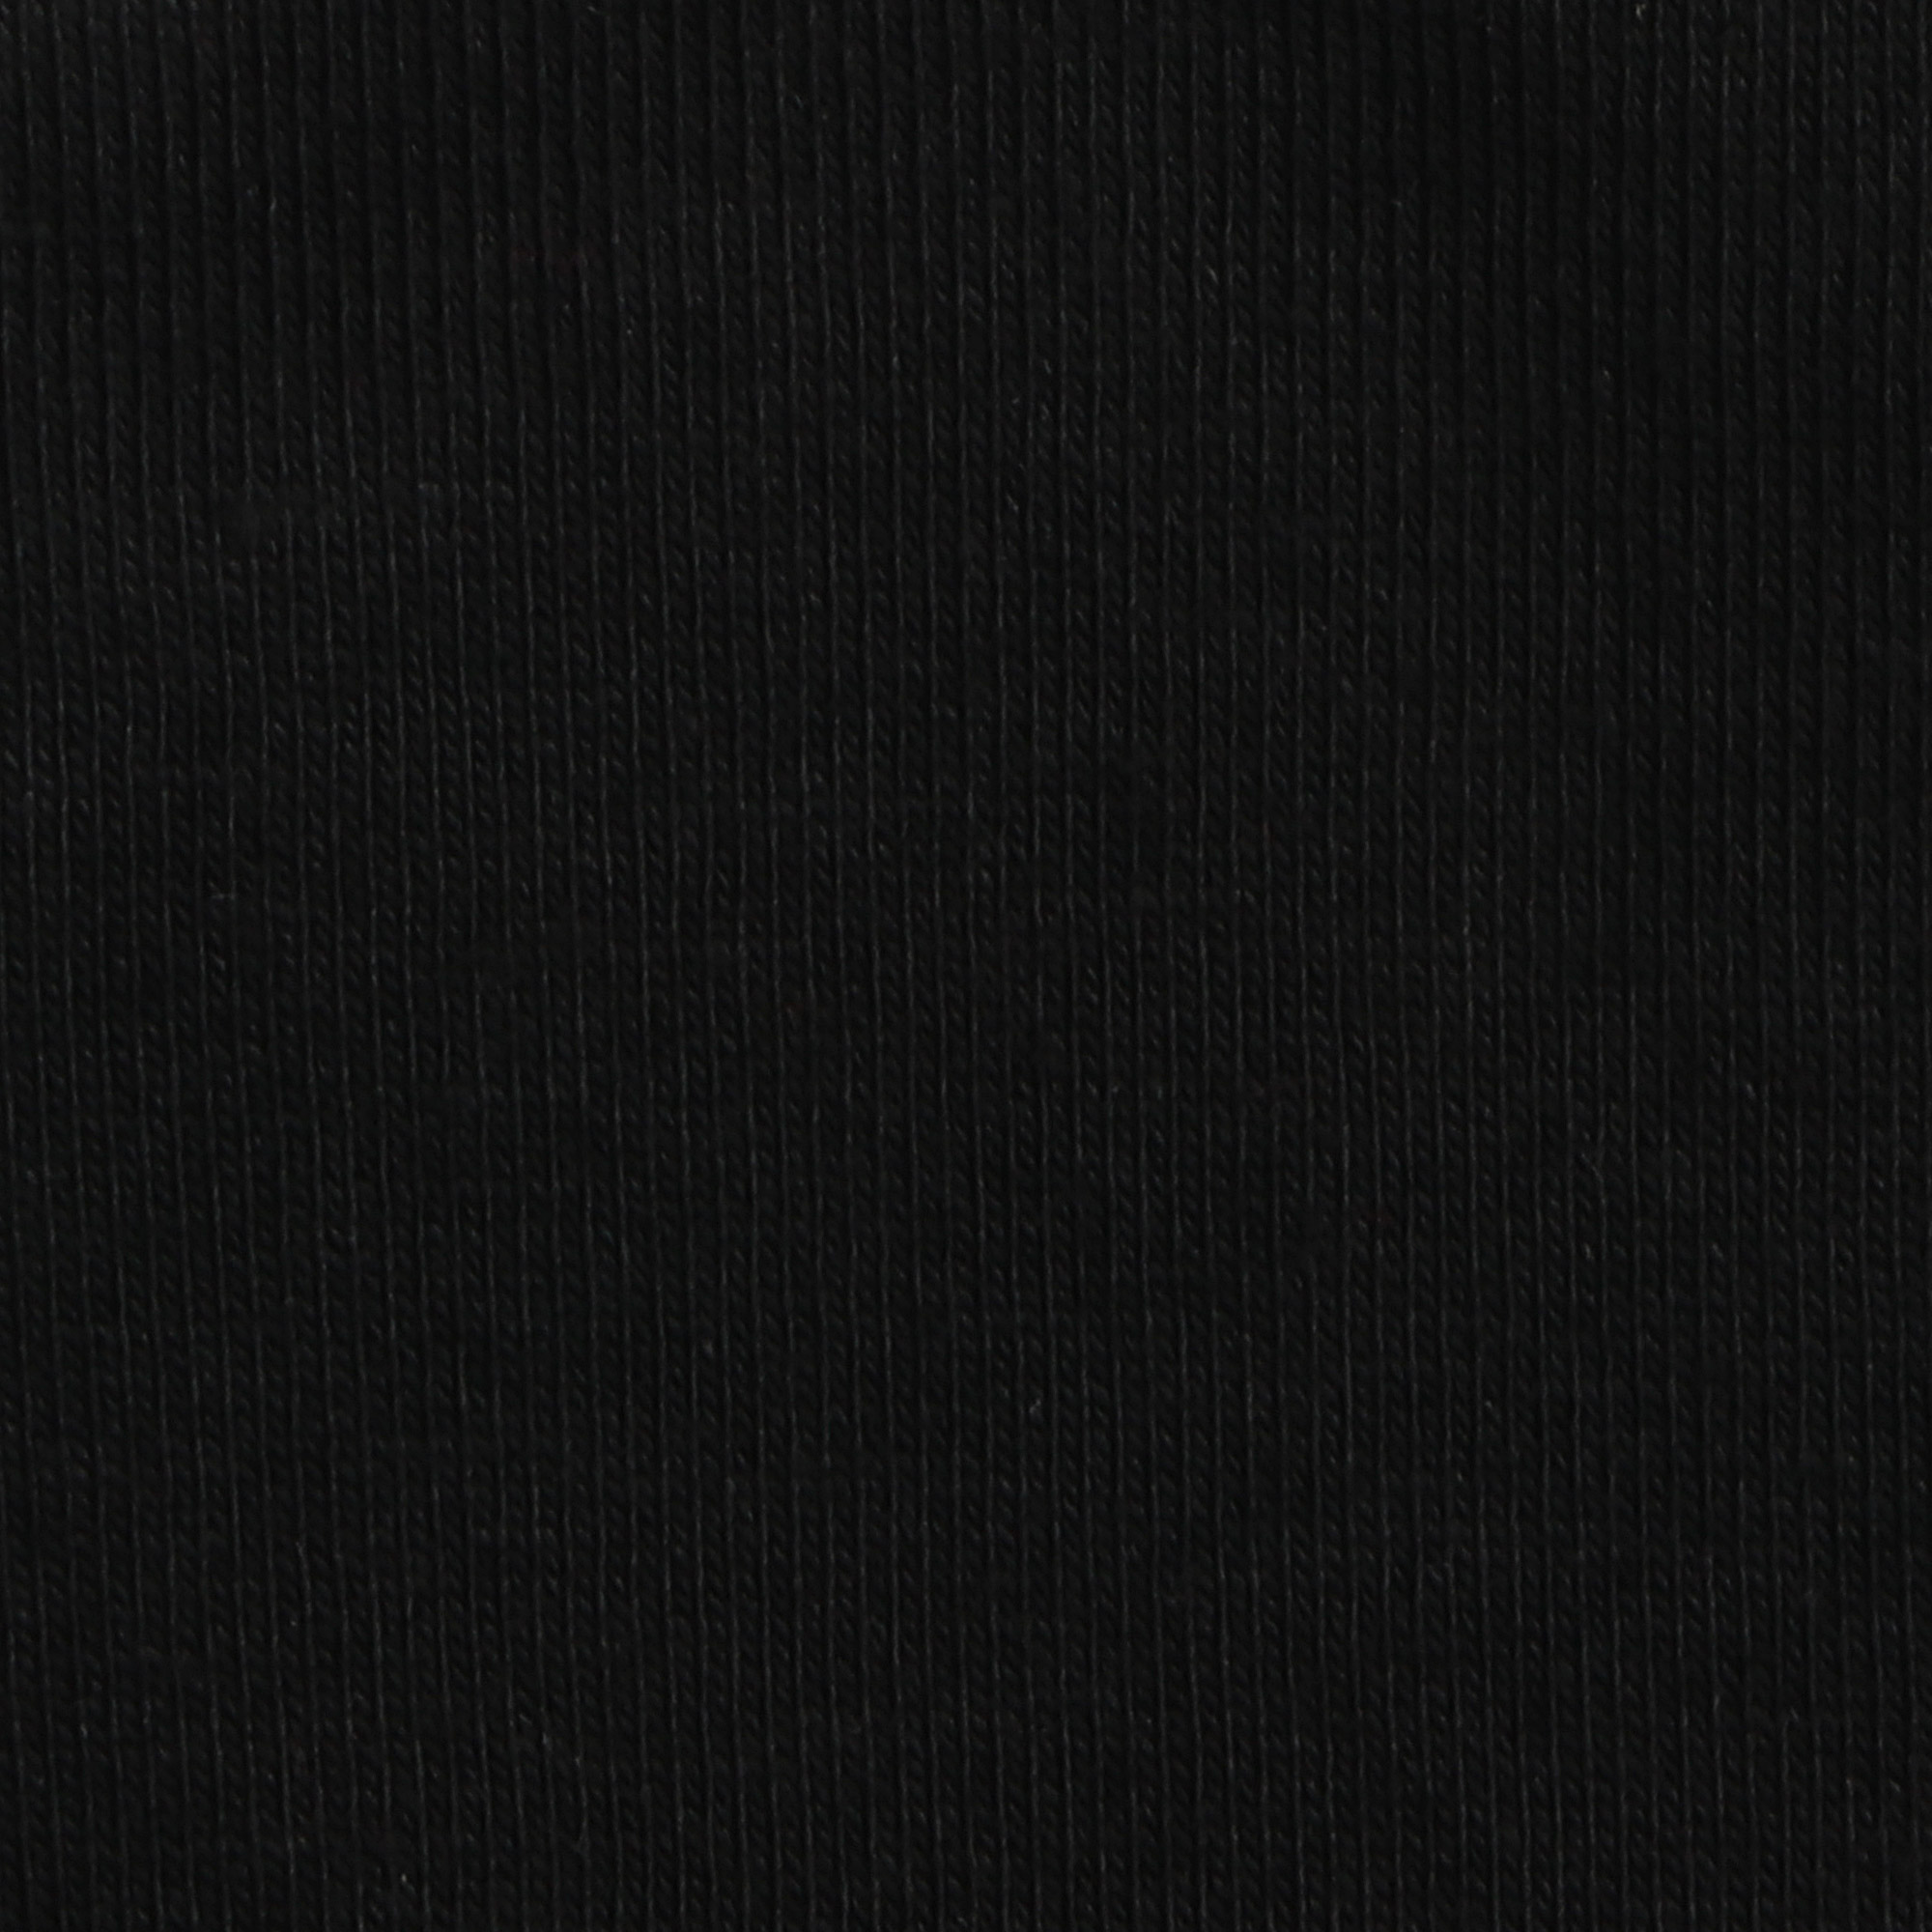 Футболка мужская AMADEY черная с коротким рукавом S, цвет черный, размер S - фото 3